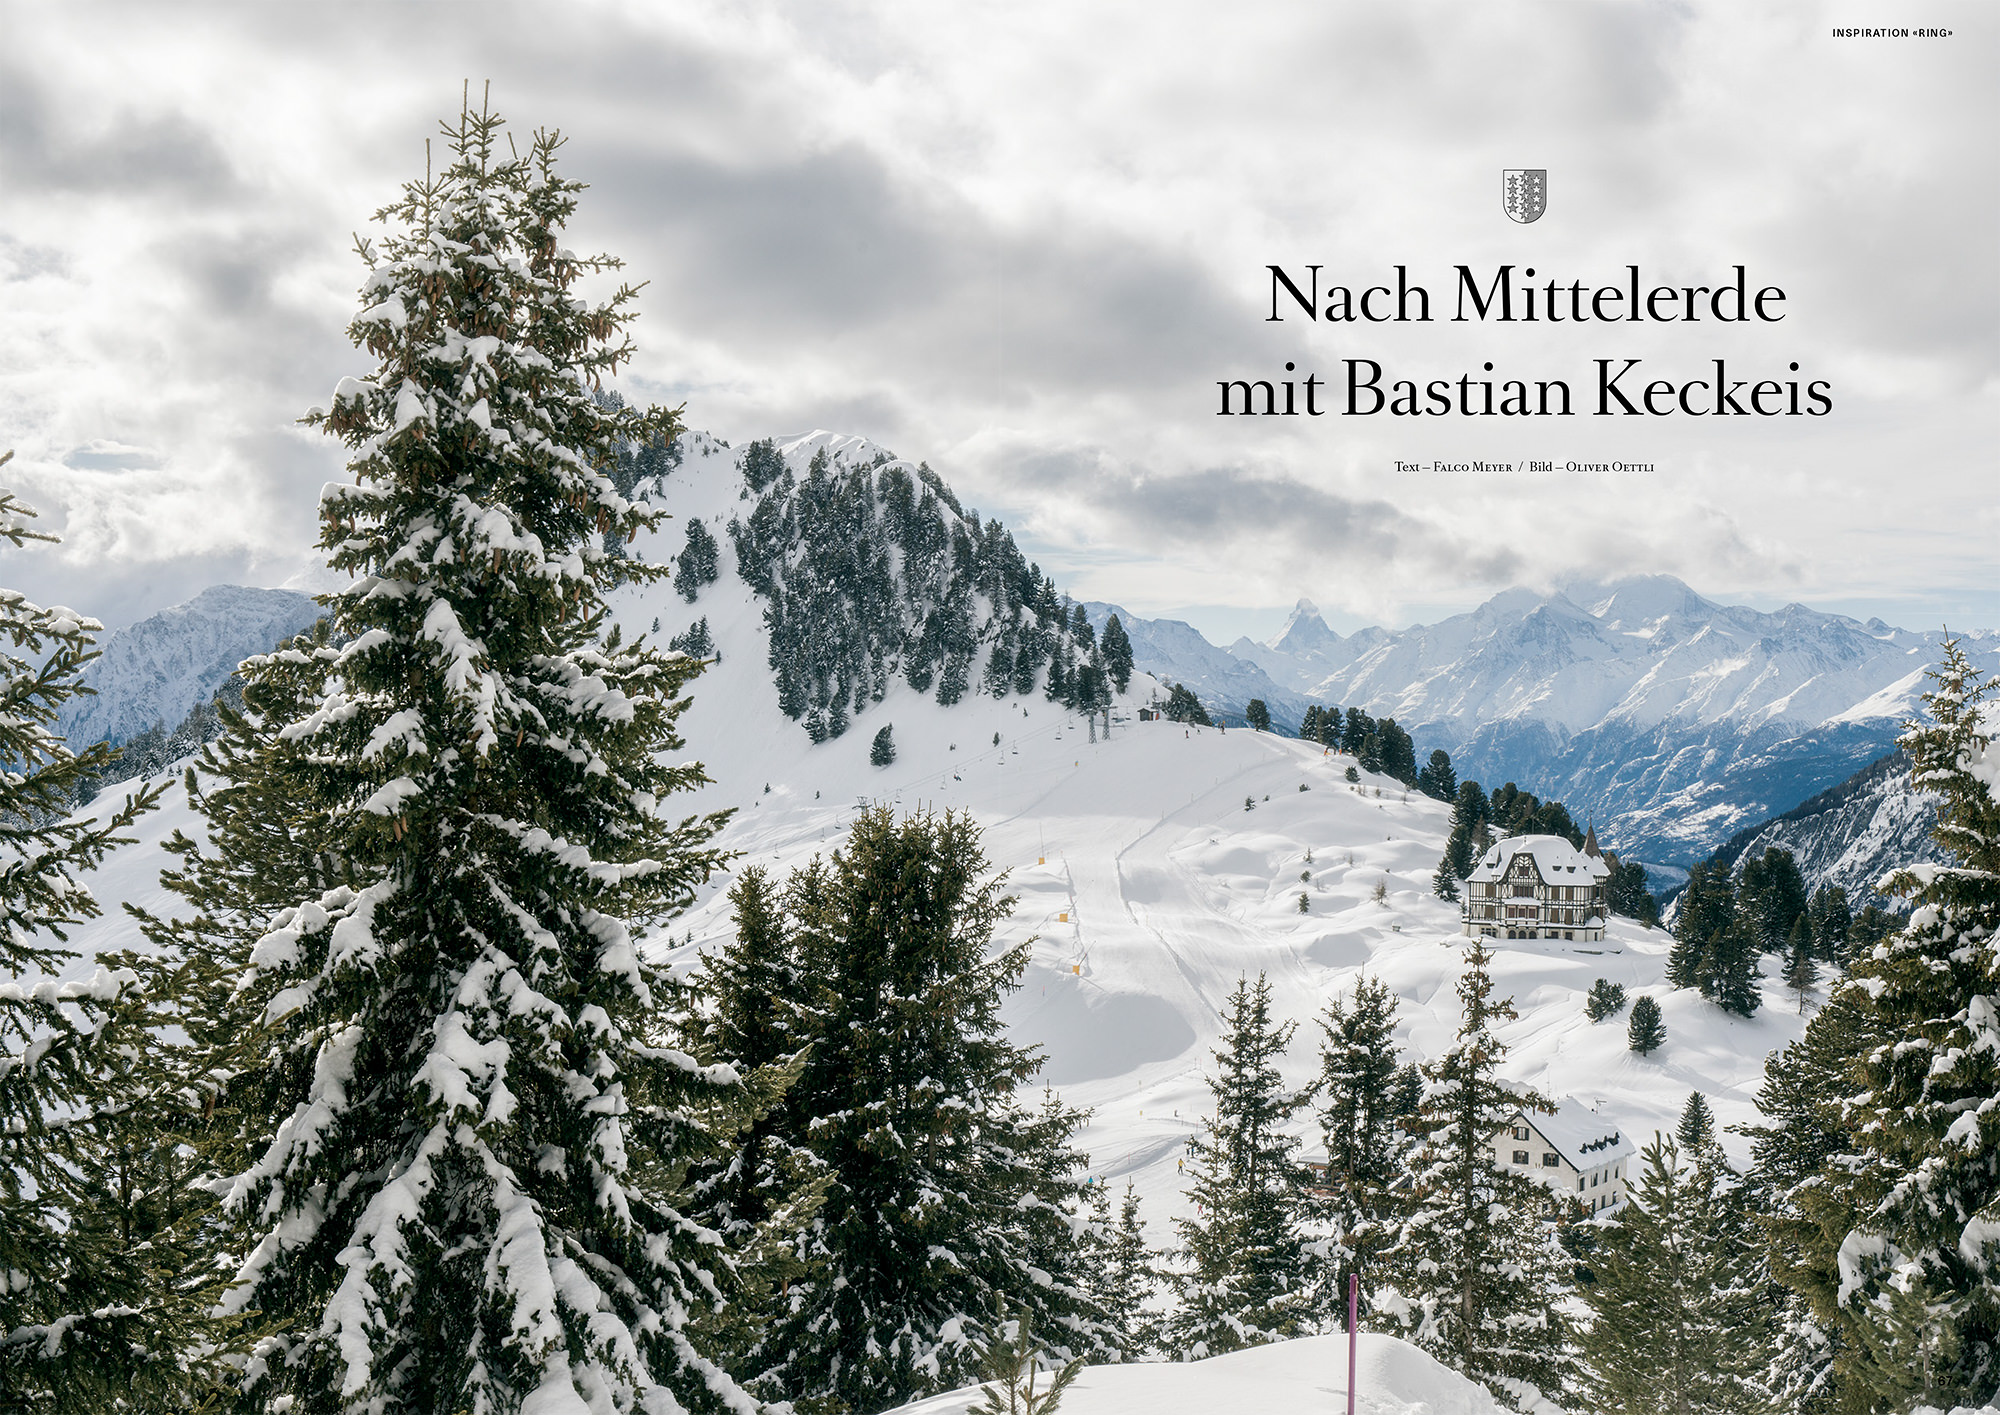 Fotografische Reportage für das schweizer Reisemagazin Transhelvetica. Landschaftsaufnahme mit dem Pro Natura Zentrum Aletsch im Hintergrund.